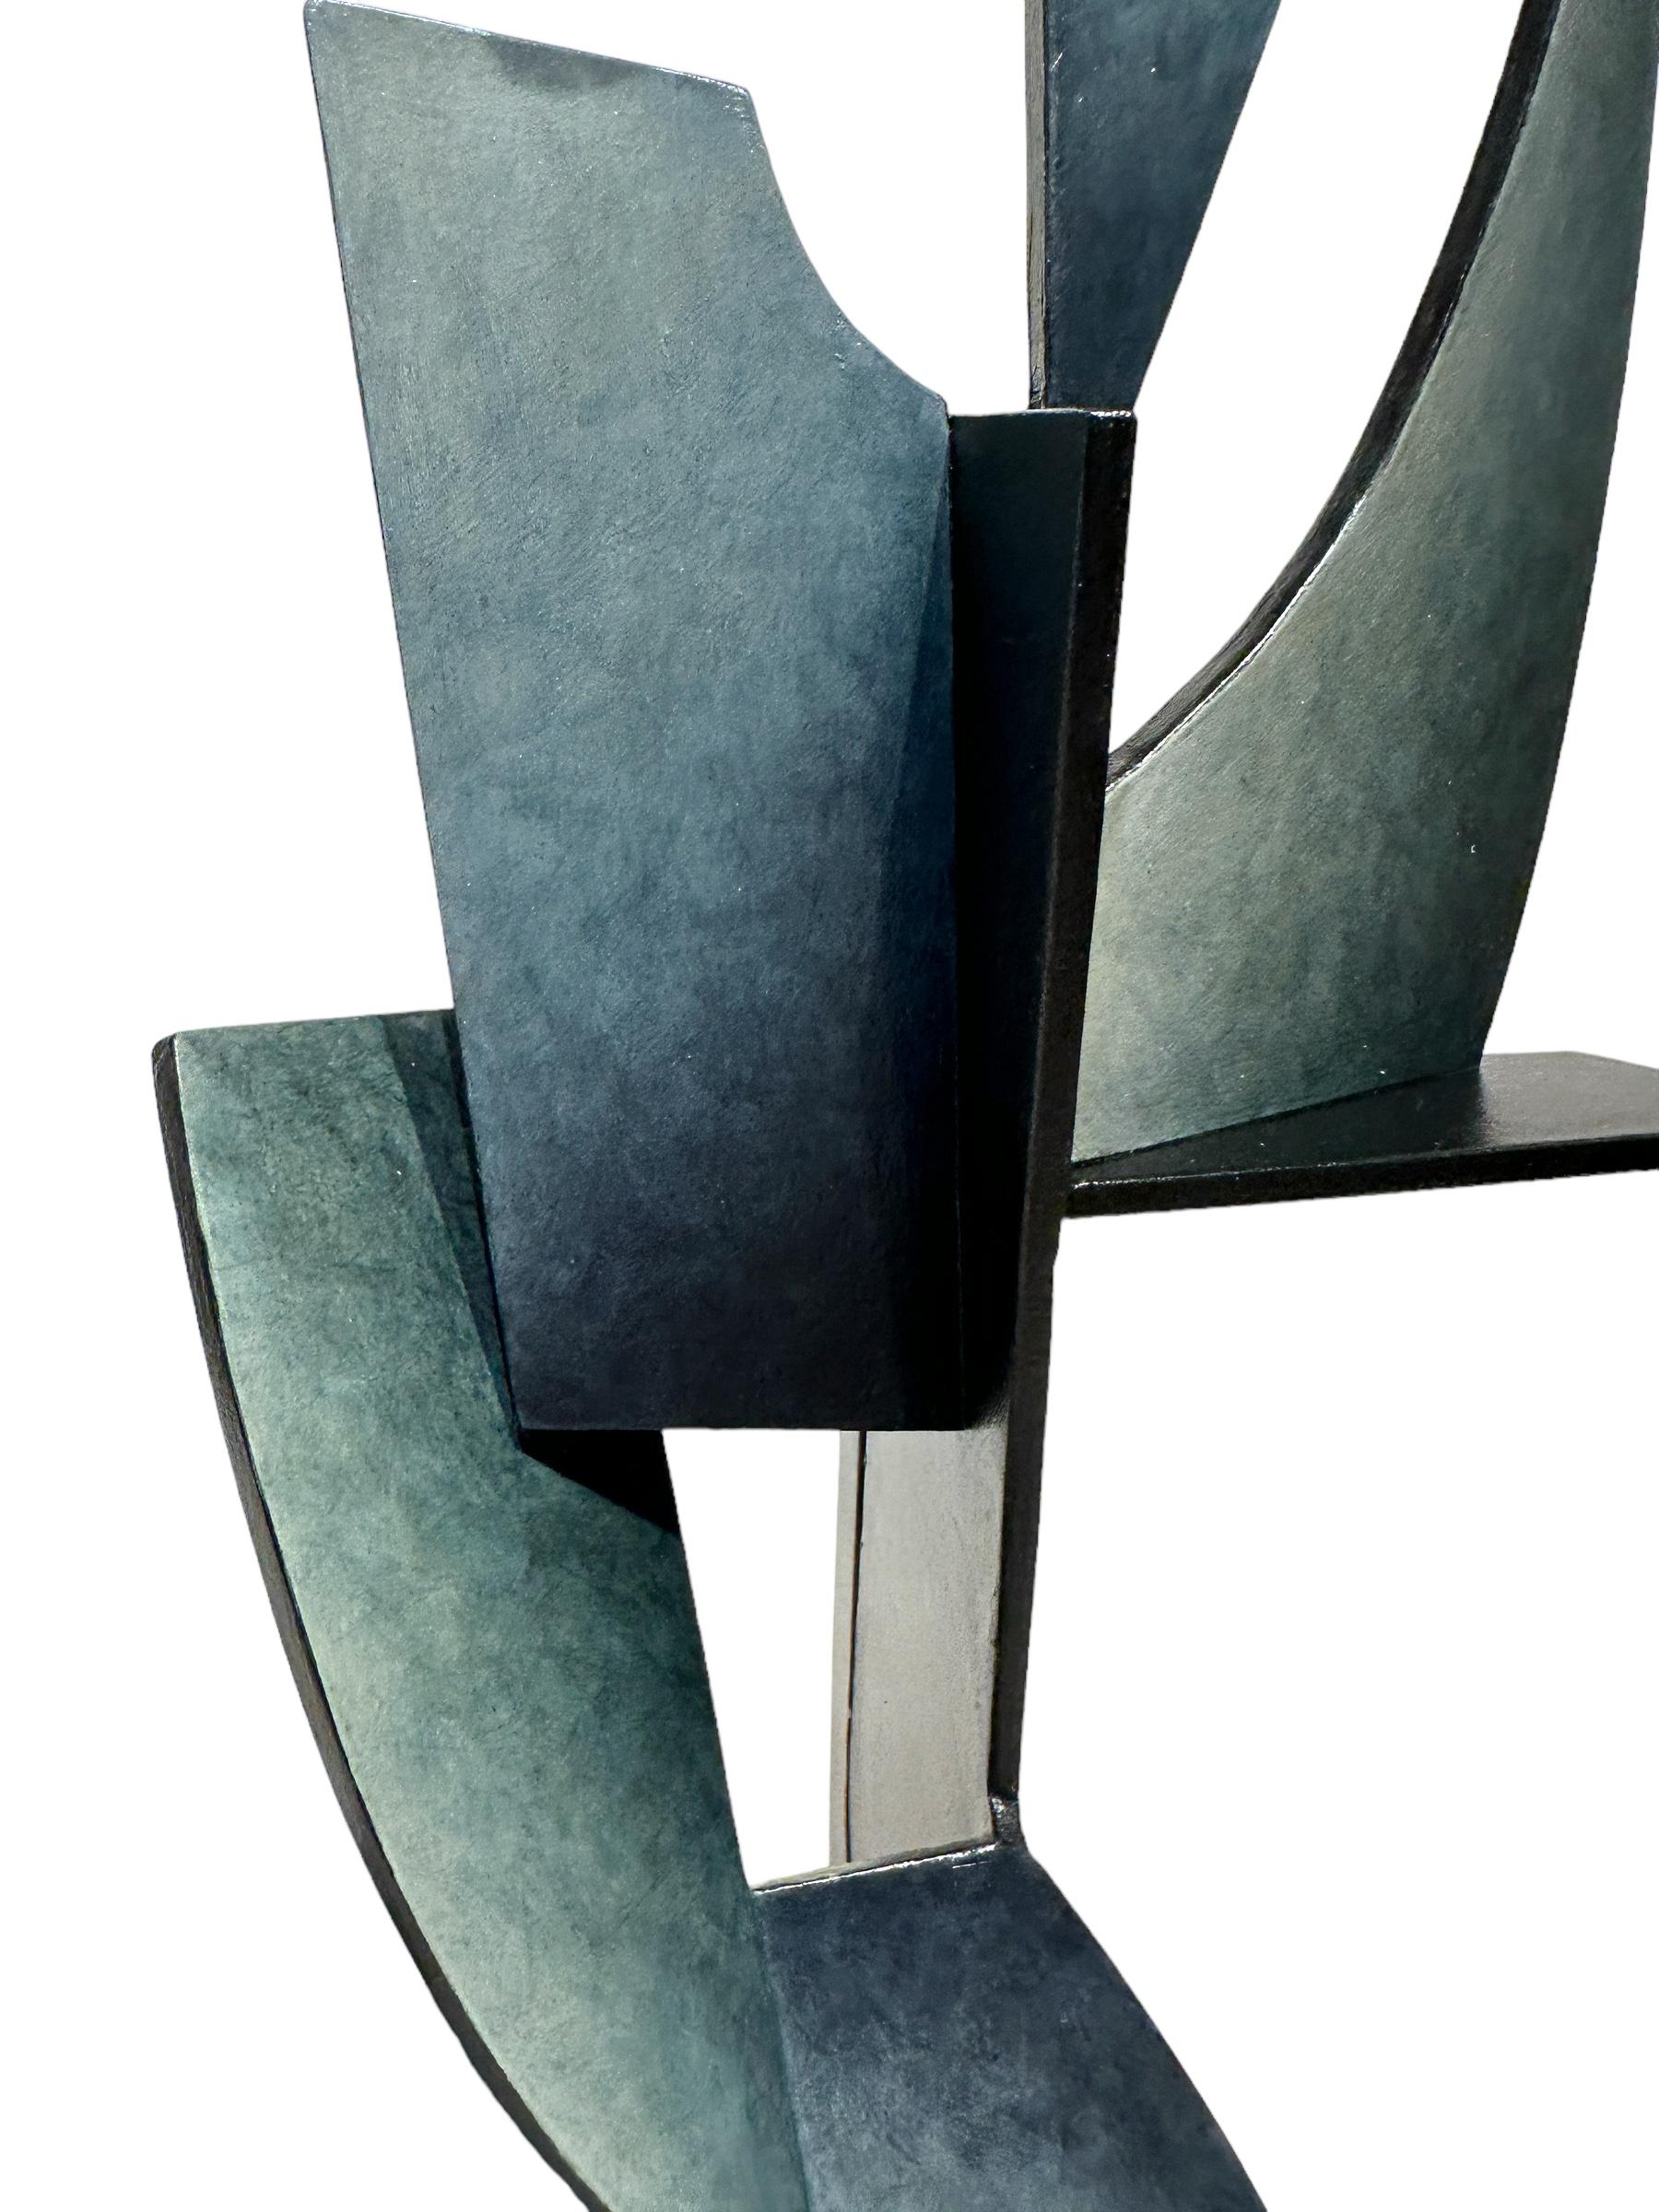 Diese dynamische, tischgroße Skulptur besteht aus Stahlblechen, die in einem abstrakten, geometrischen Muster zusammengeschweißt und anschließend mit einer Acrylfarbe bemalt wurden, um die Oberfläche zu verbessern. Während sich das Werk an eine